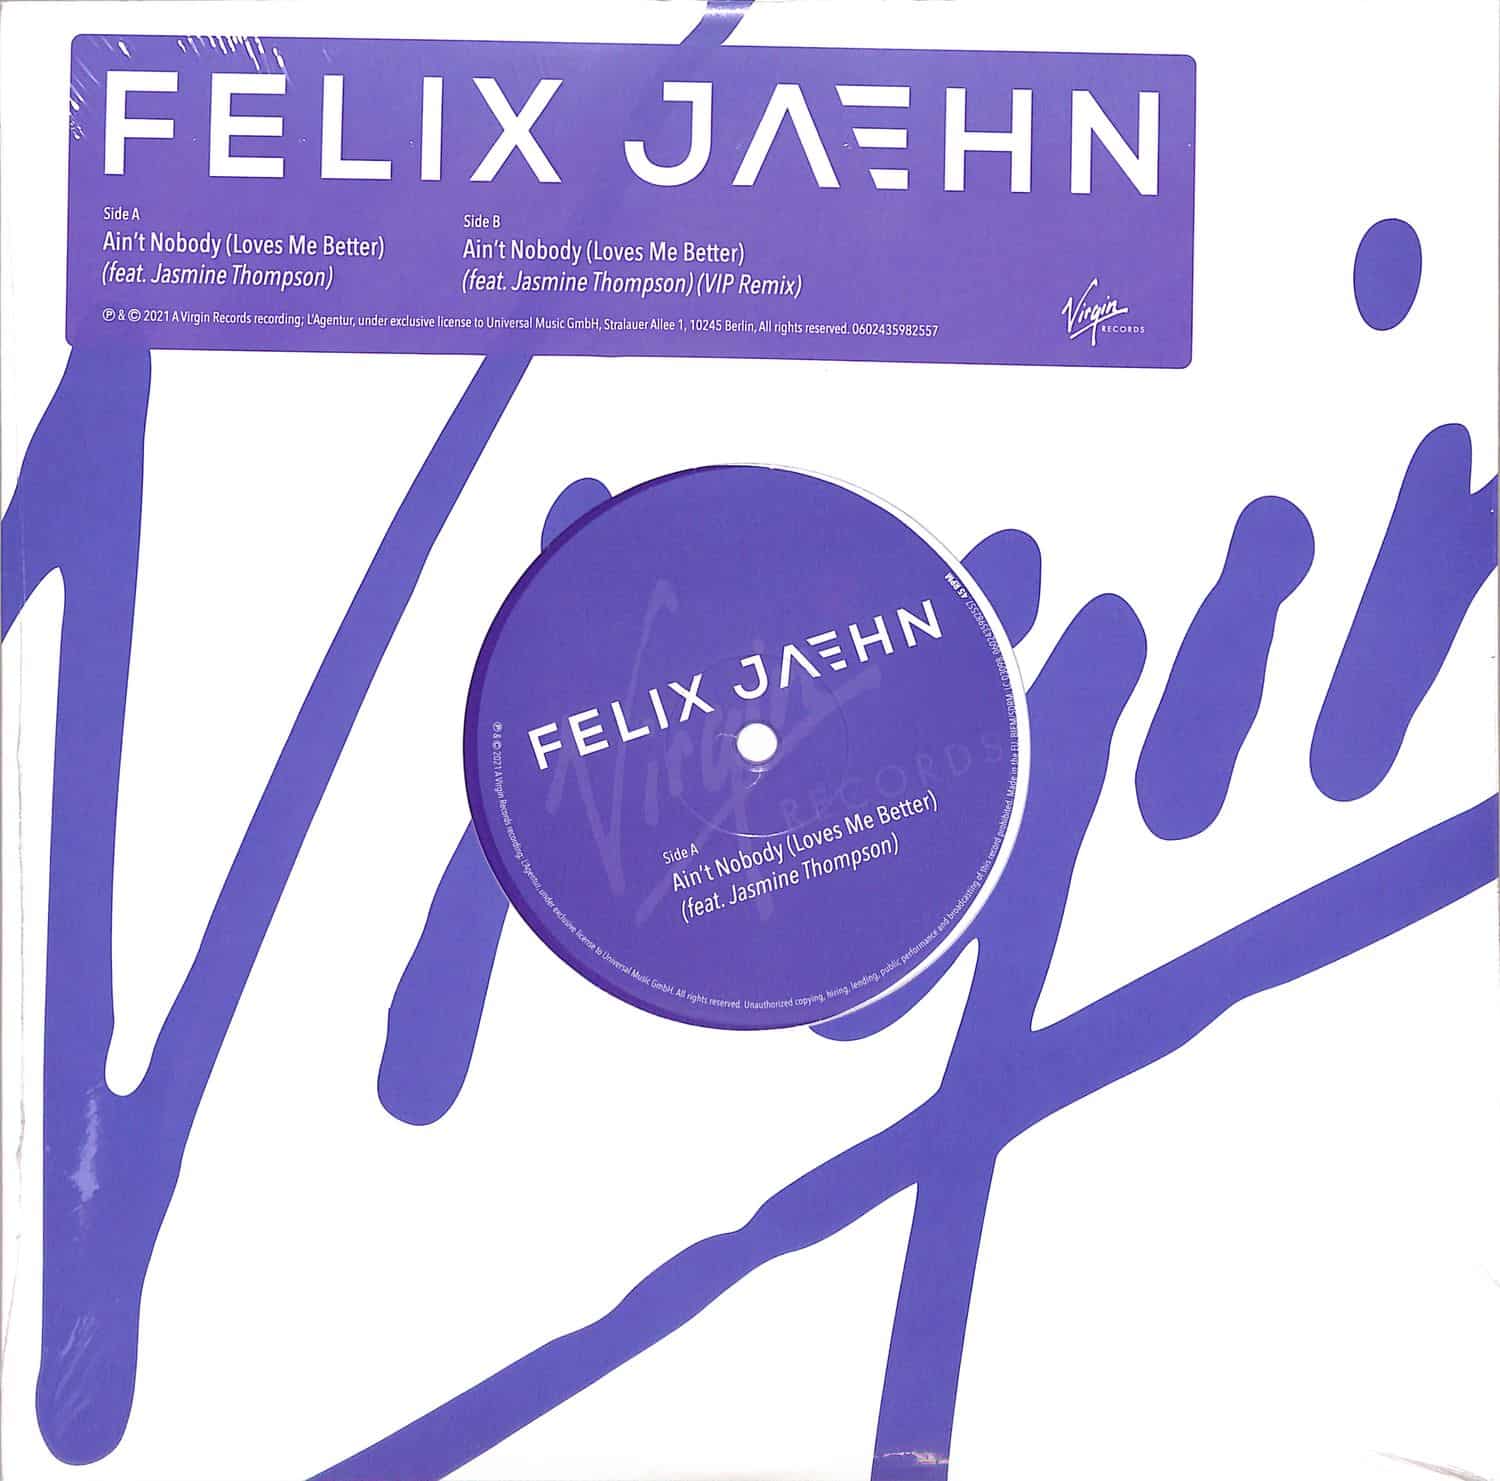 Felix Jaehn Feat. Jasmine Thompson - AINT NOBODY 